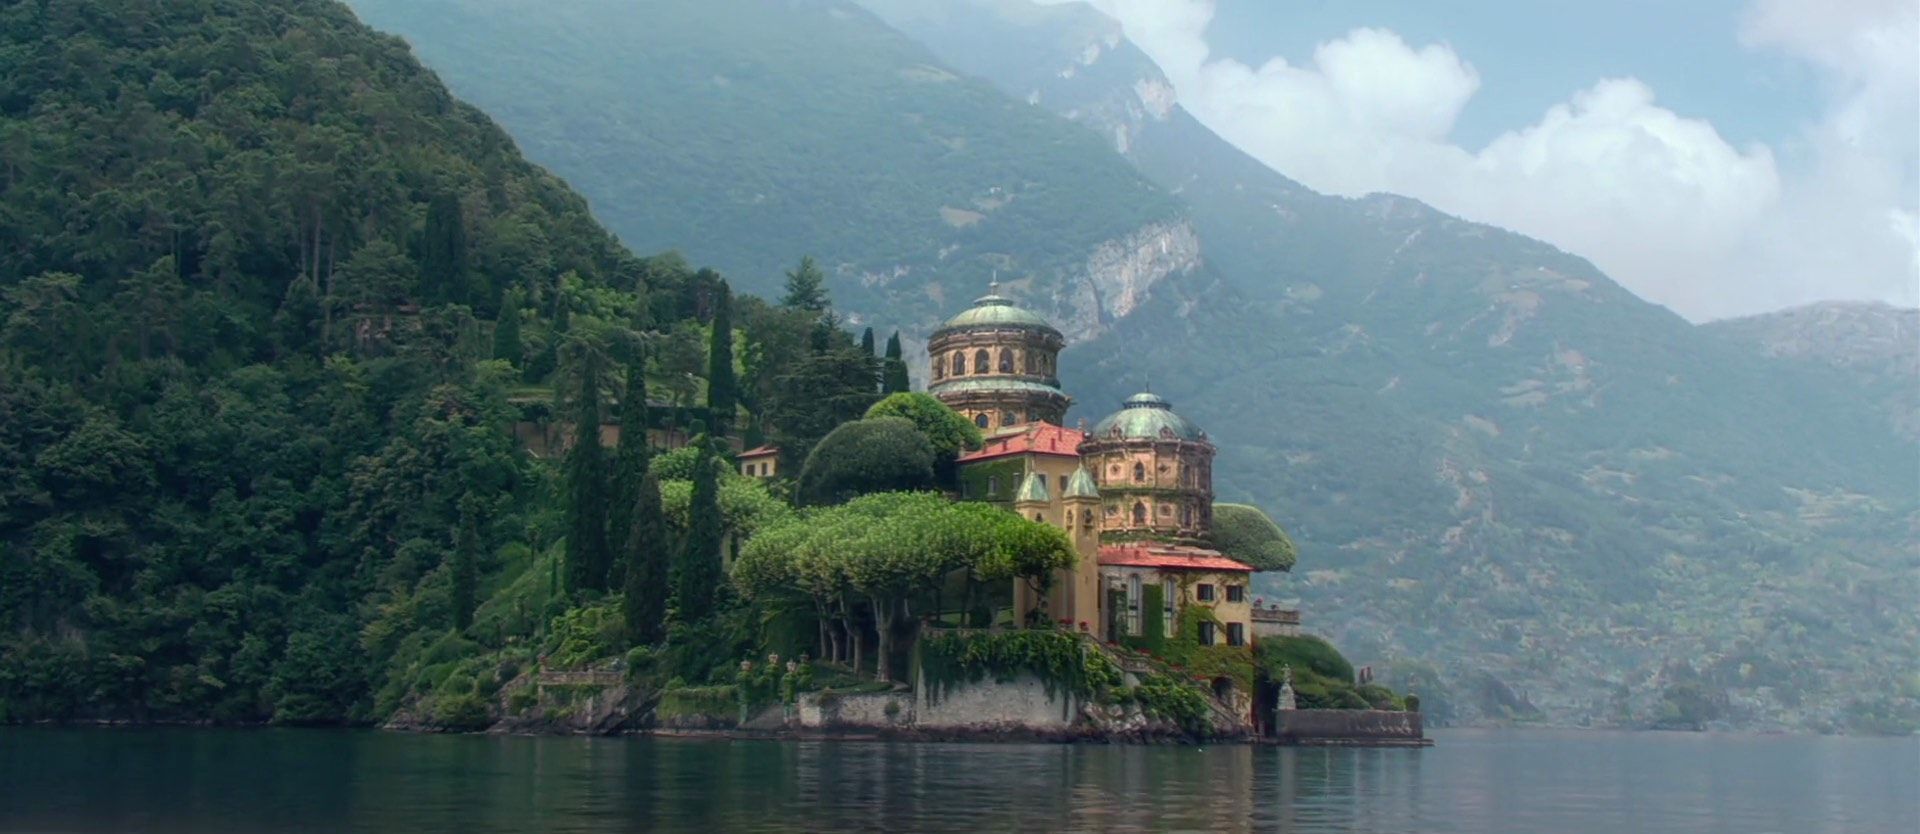 Gwiezdne Wojny, Atak klonów – Bellagio nad Jeziorem Como